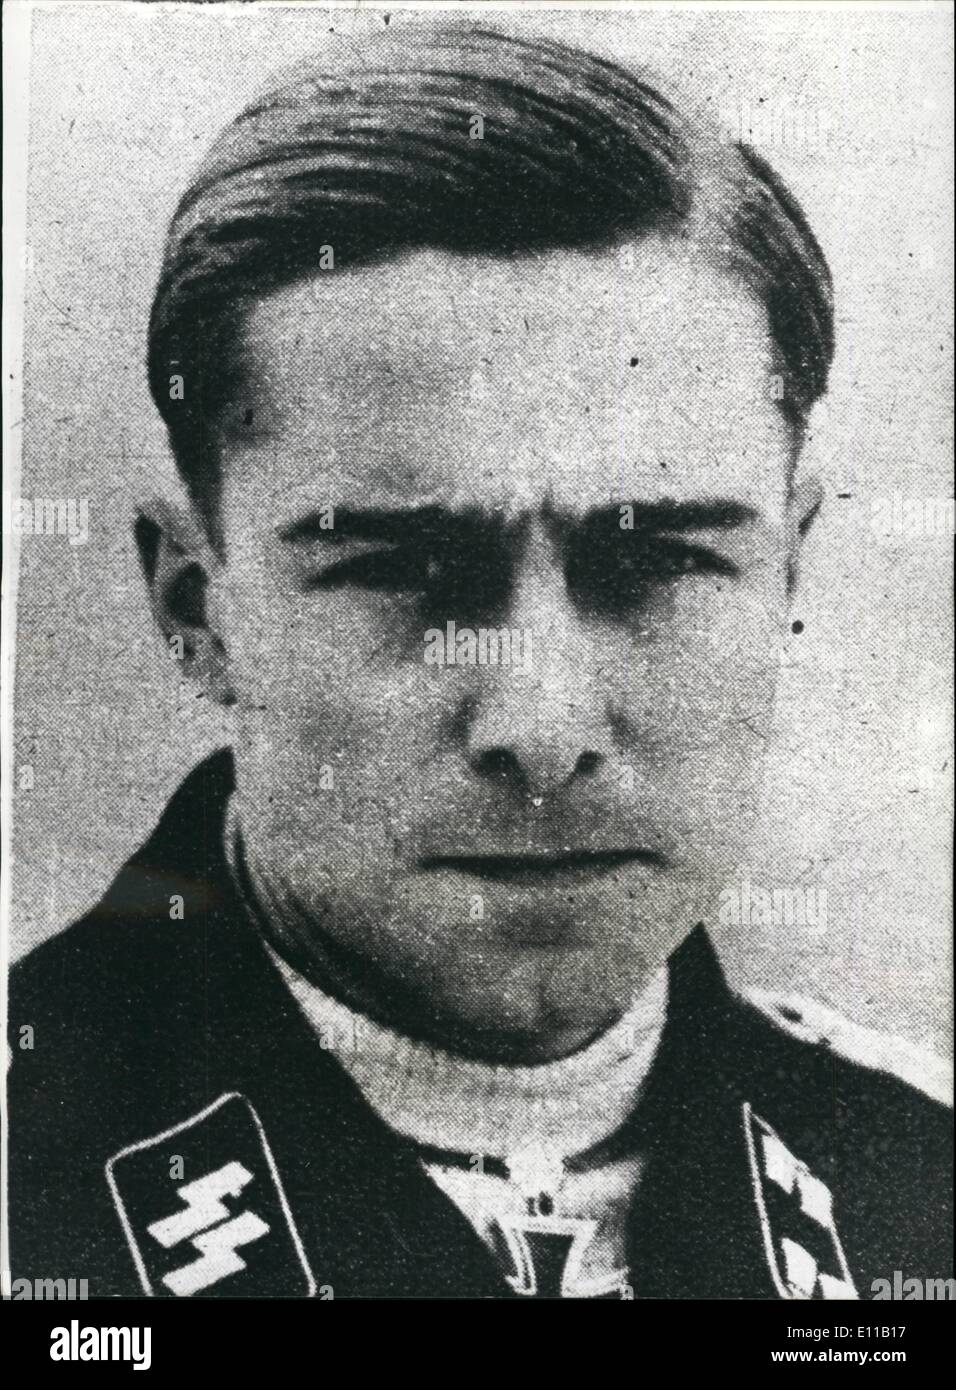 07. Jul. 1976 - Ex-Kriegsverbrecher stirbt im Hausbrand: Joachim Peier, ehemaliger Oberst der SS, soll gestorben sein, als sein Haus in Traves im Departement Haute Saone in Frankreich am Dienstagabend von einer unbekannten Gruppe niedergebrannt wurde. Am Ende des Krieges wurde Peiper beschuldigt, 71 amerikanische Kriegsgefangene während der Ardennenschlacht 1944 erschossen zu haben und von einem amerikanischen Militärgericht in Dachau zum Tode verurteilt worden zu sein. Seine Strafe wurde später in lebenslange Haft umgewandelt, aber er wurde 1957 freigelassen Stockfoto